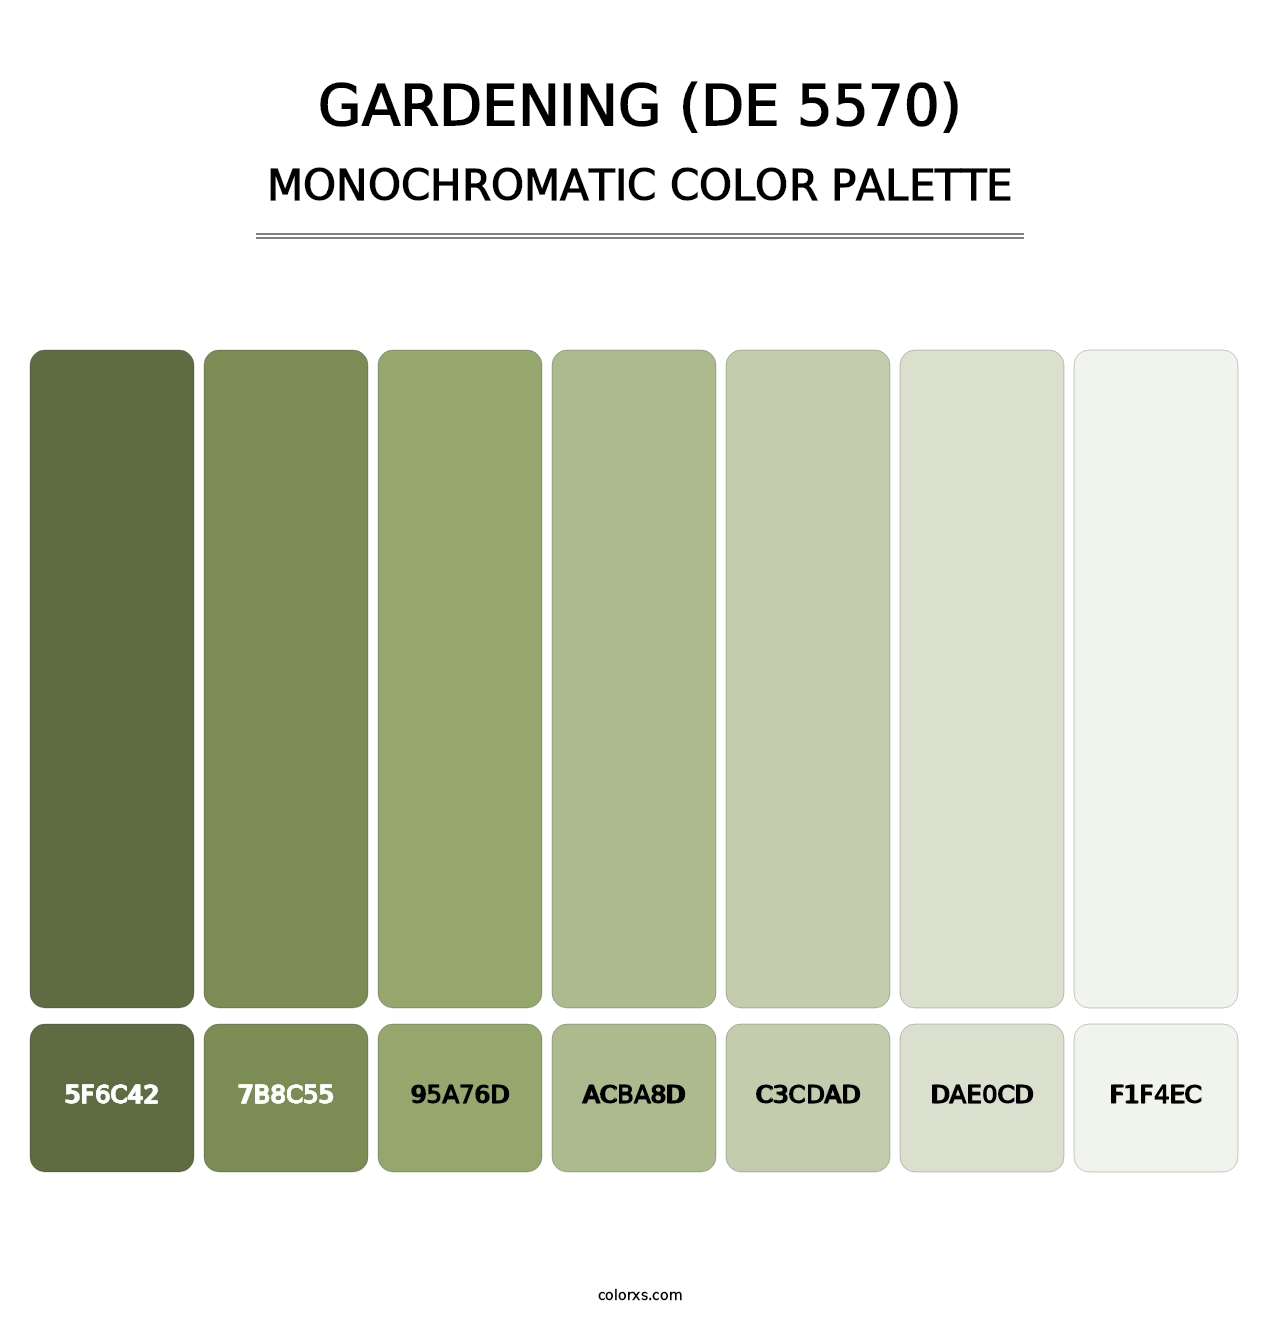 Gardening (DE 5570) - Monochromatic Color Palette